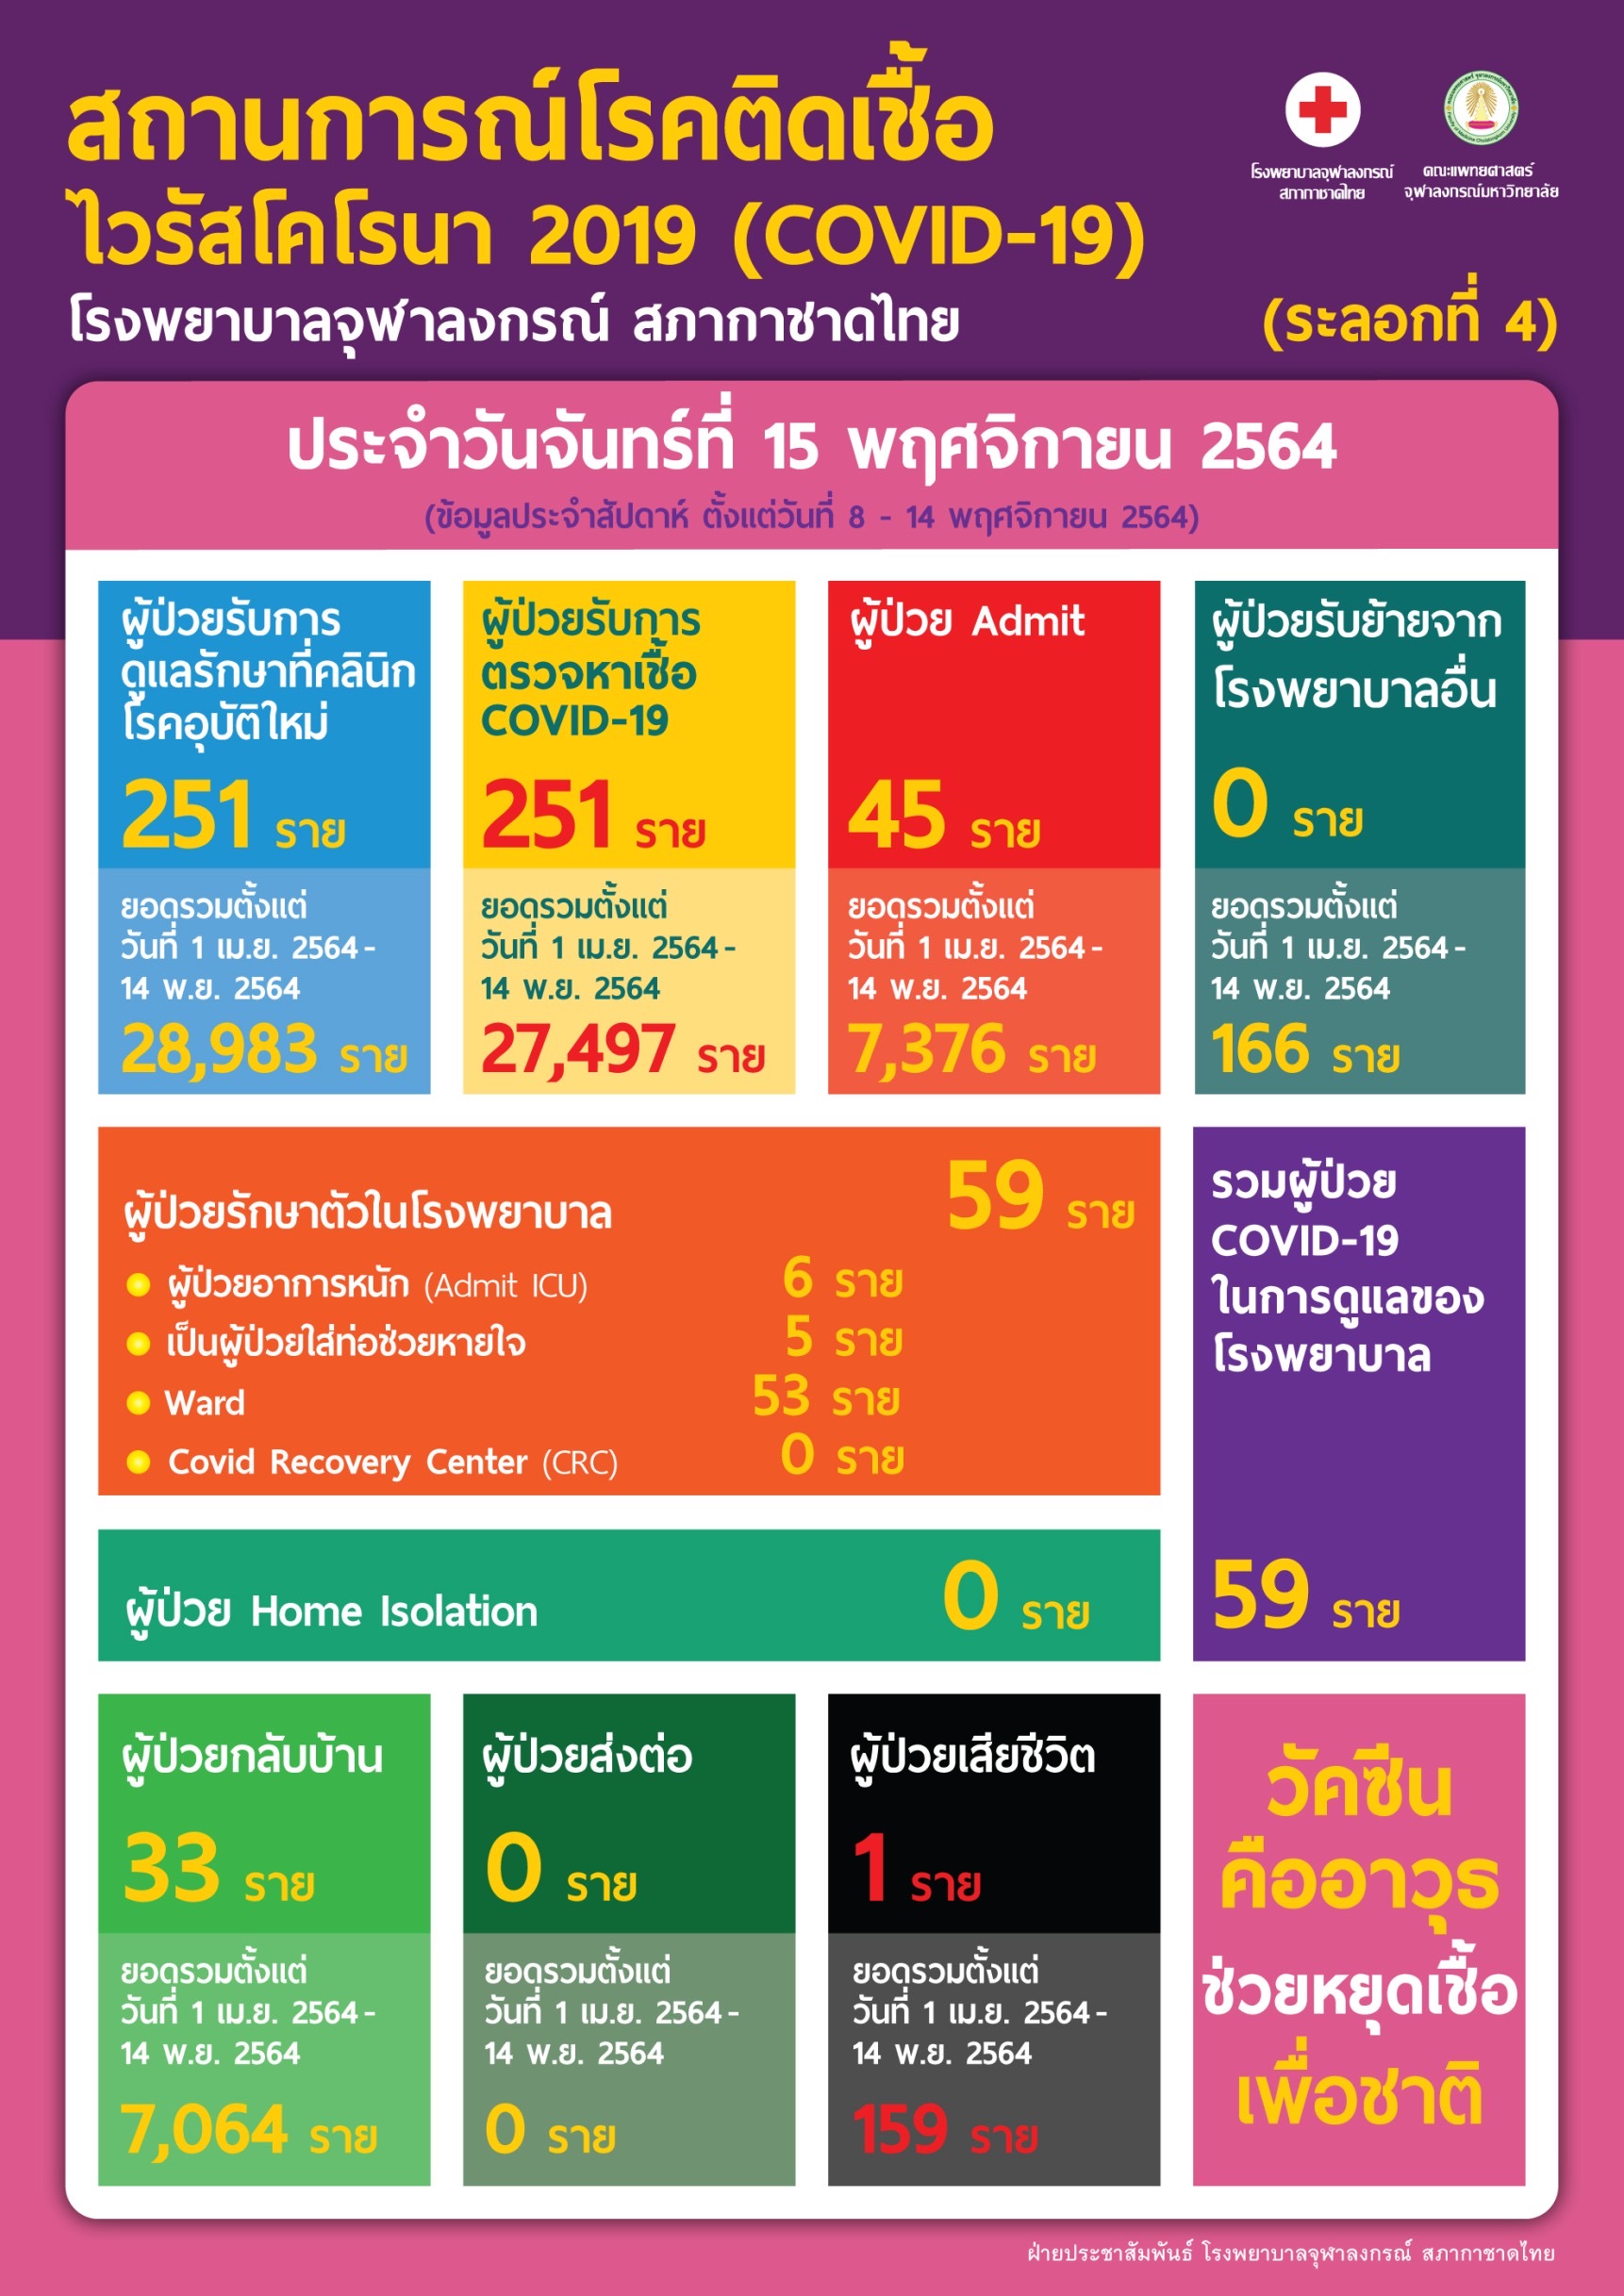 สถานการณ์โรคติดเชื้อไวรัสโคโรนา 2019 (COVID-19) (ระลอกที่ 4) โรงพยาบาลจุฬาลงกรณ์ สภากาชาดไทย ประจำวันจันทร์ที่ 15 พฤศจิกายน 2564